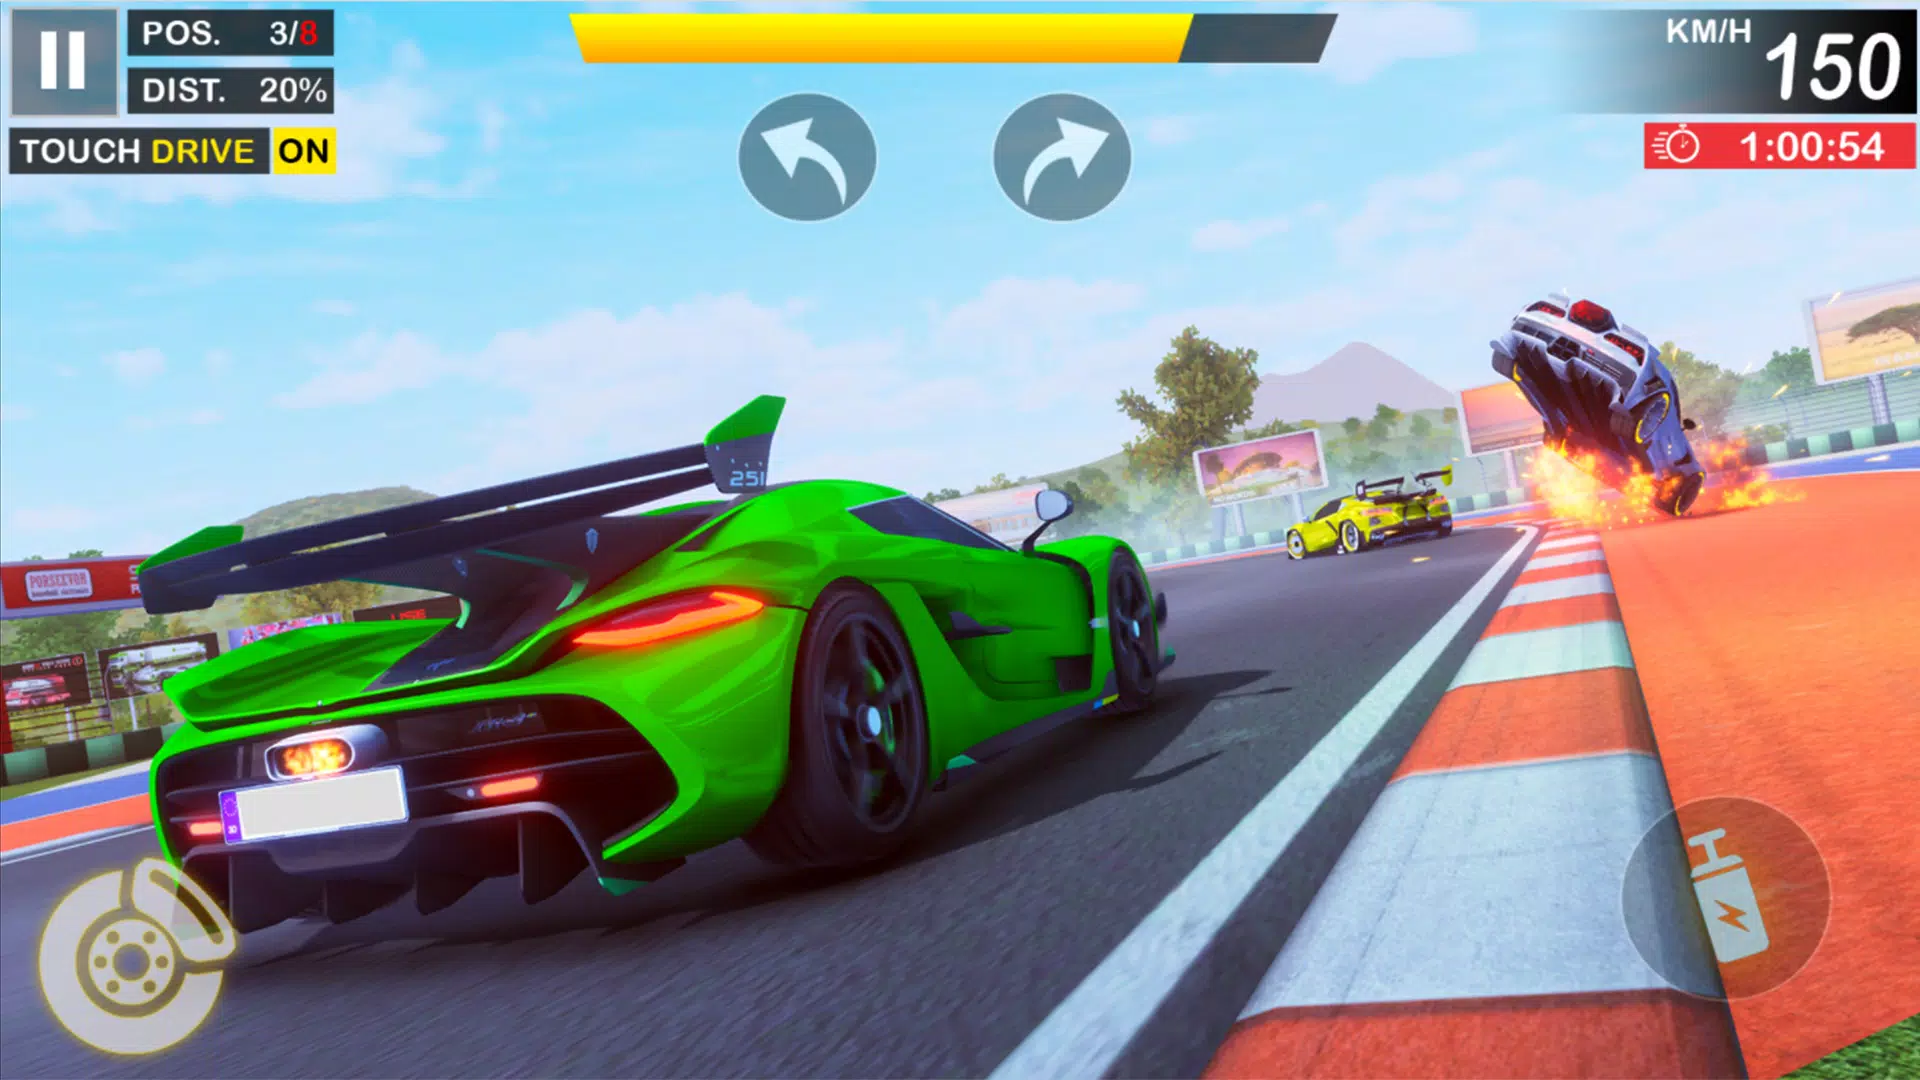 Download do APK de jogo de corrida diferente para Android